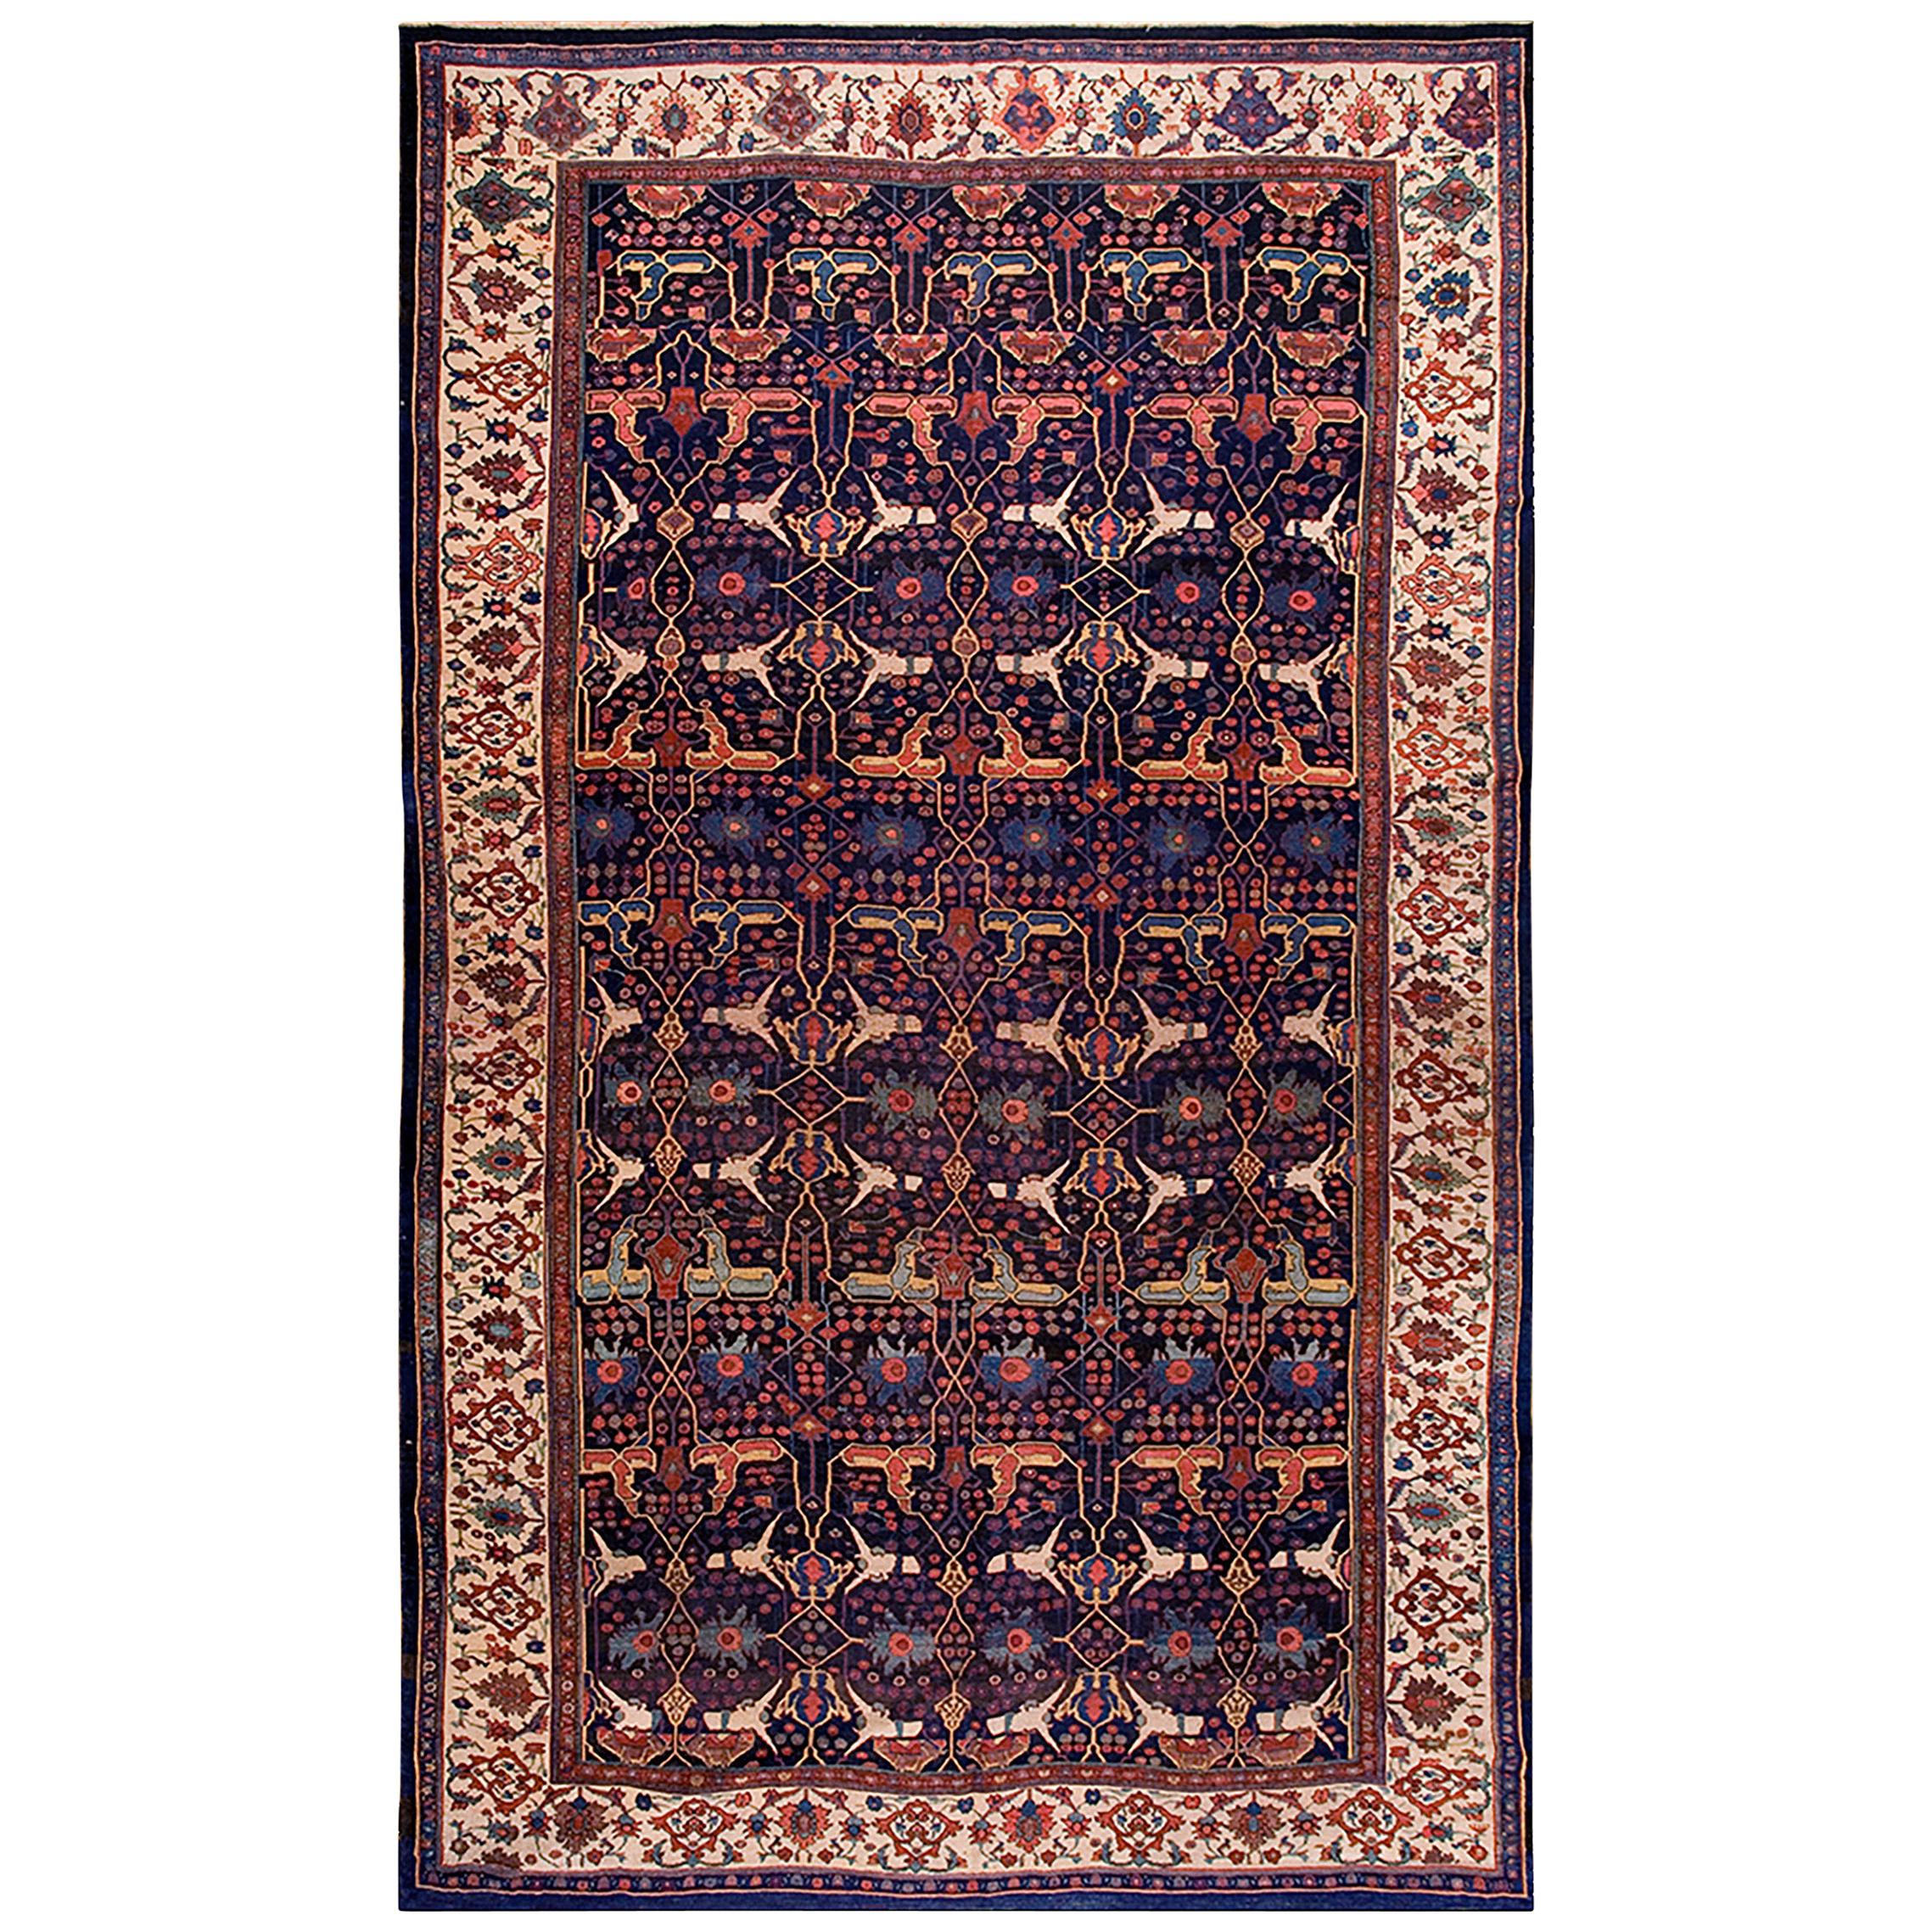 Persischer Bijar-Garrus-Teppich aus dem 19. Jahrhundert ( 11'3" x 18'10" - 343 x 575)